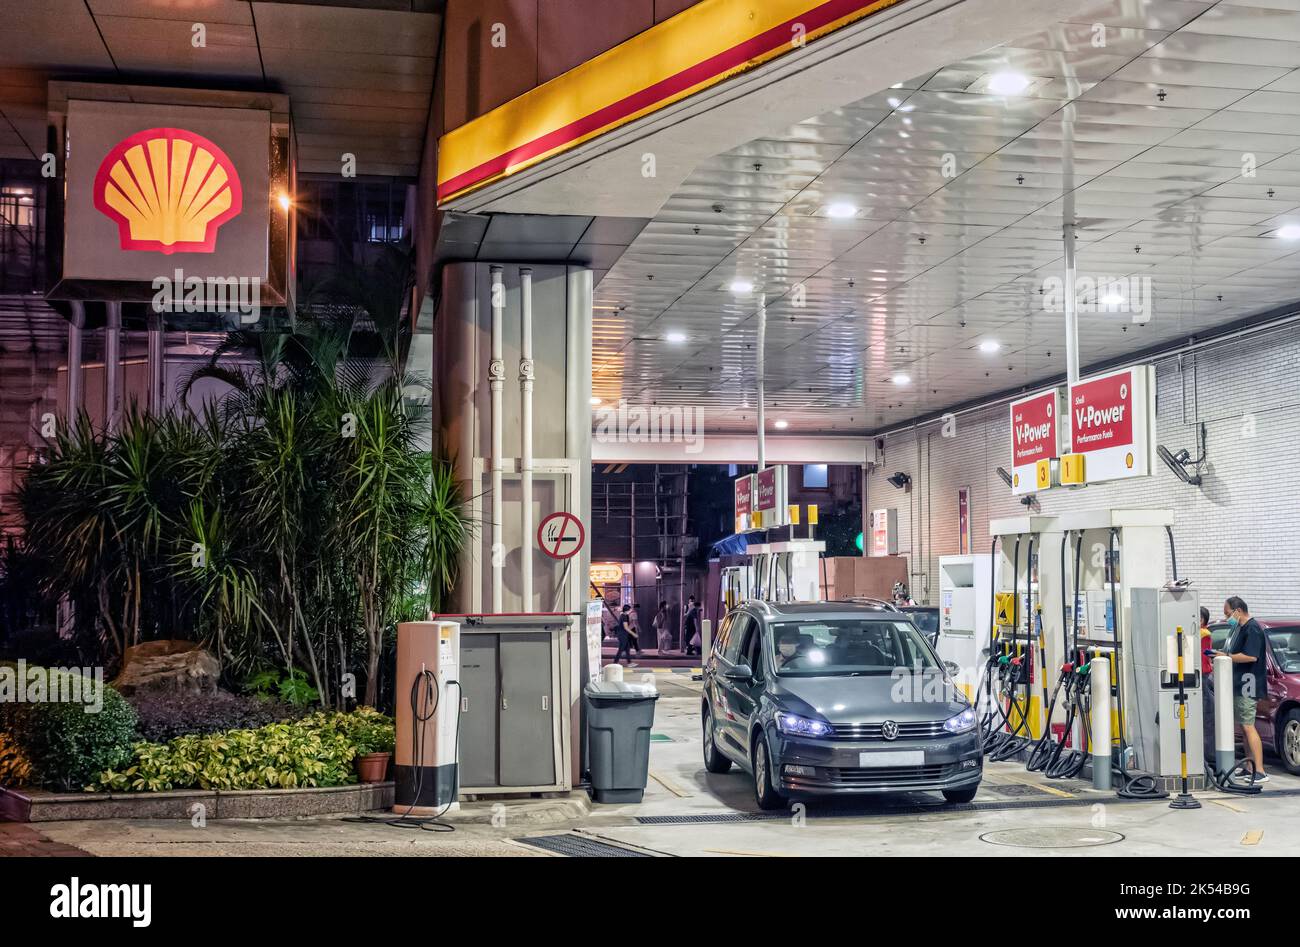 Shell petrol station, Hong Kong, China. Stock Photo